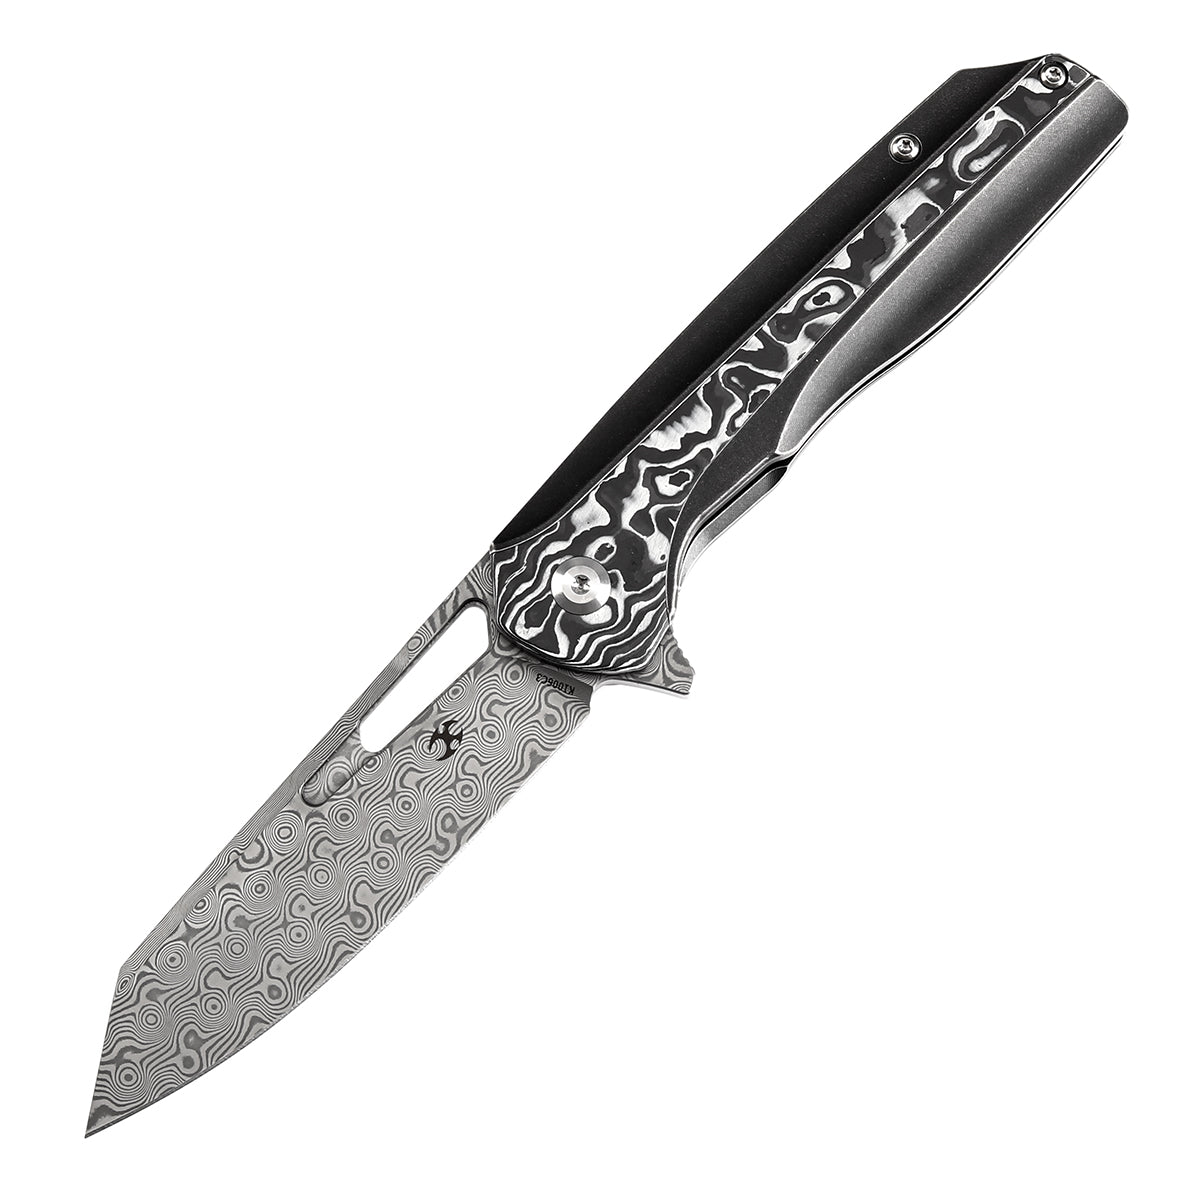 Kansept Shard K1006C3 Damascus Blade White Carbon Fiber Handle Folding Knife